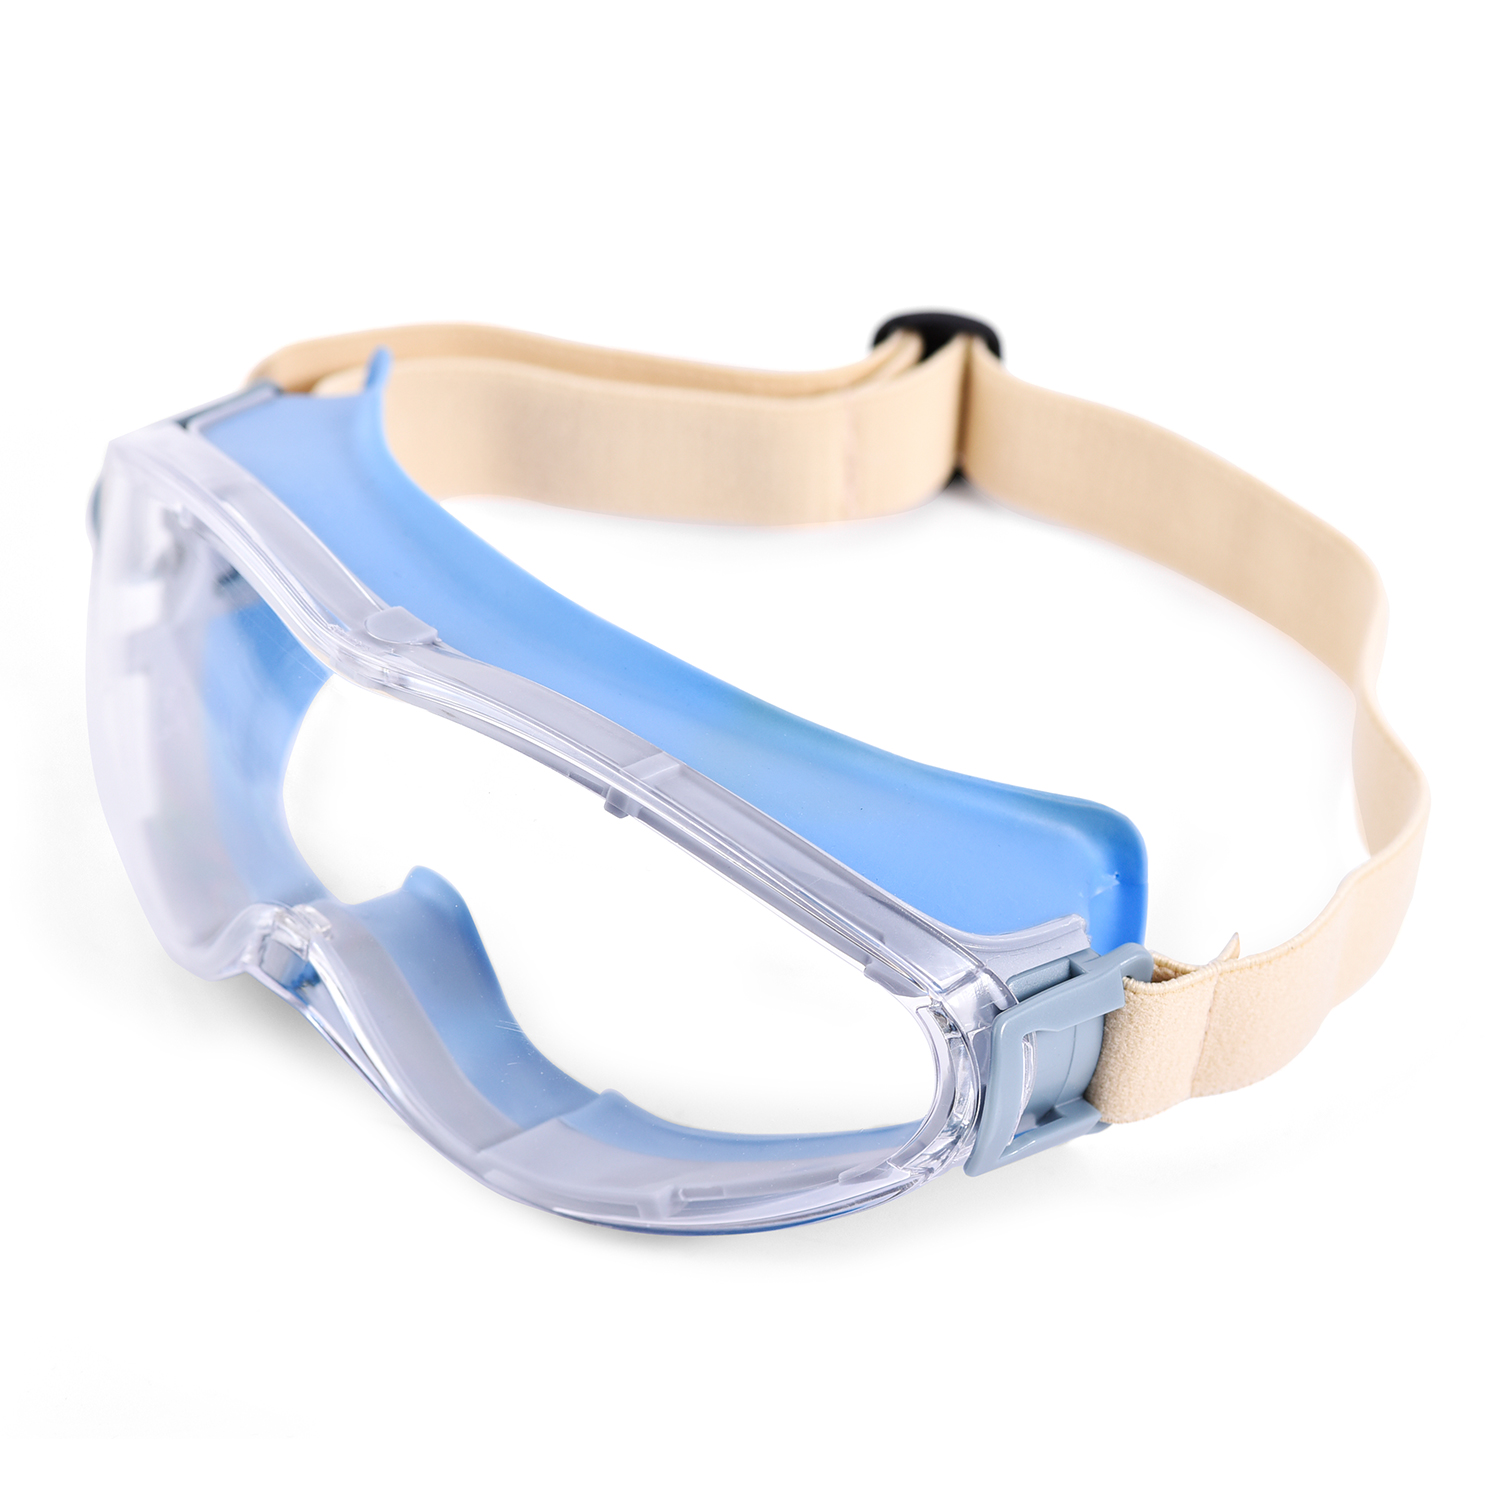 Zatwierdzone okulary ochronne KS504 niebieskie